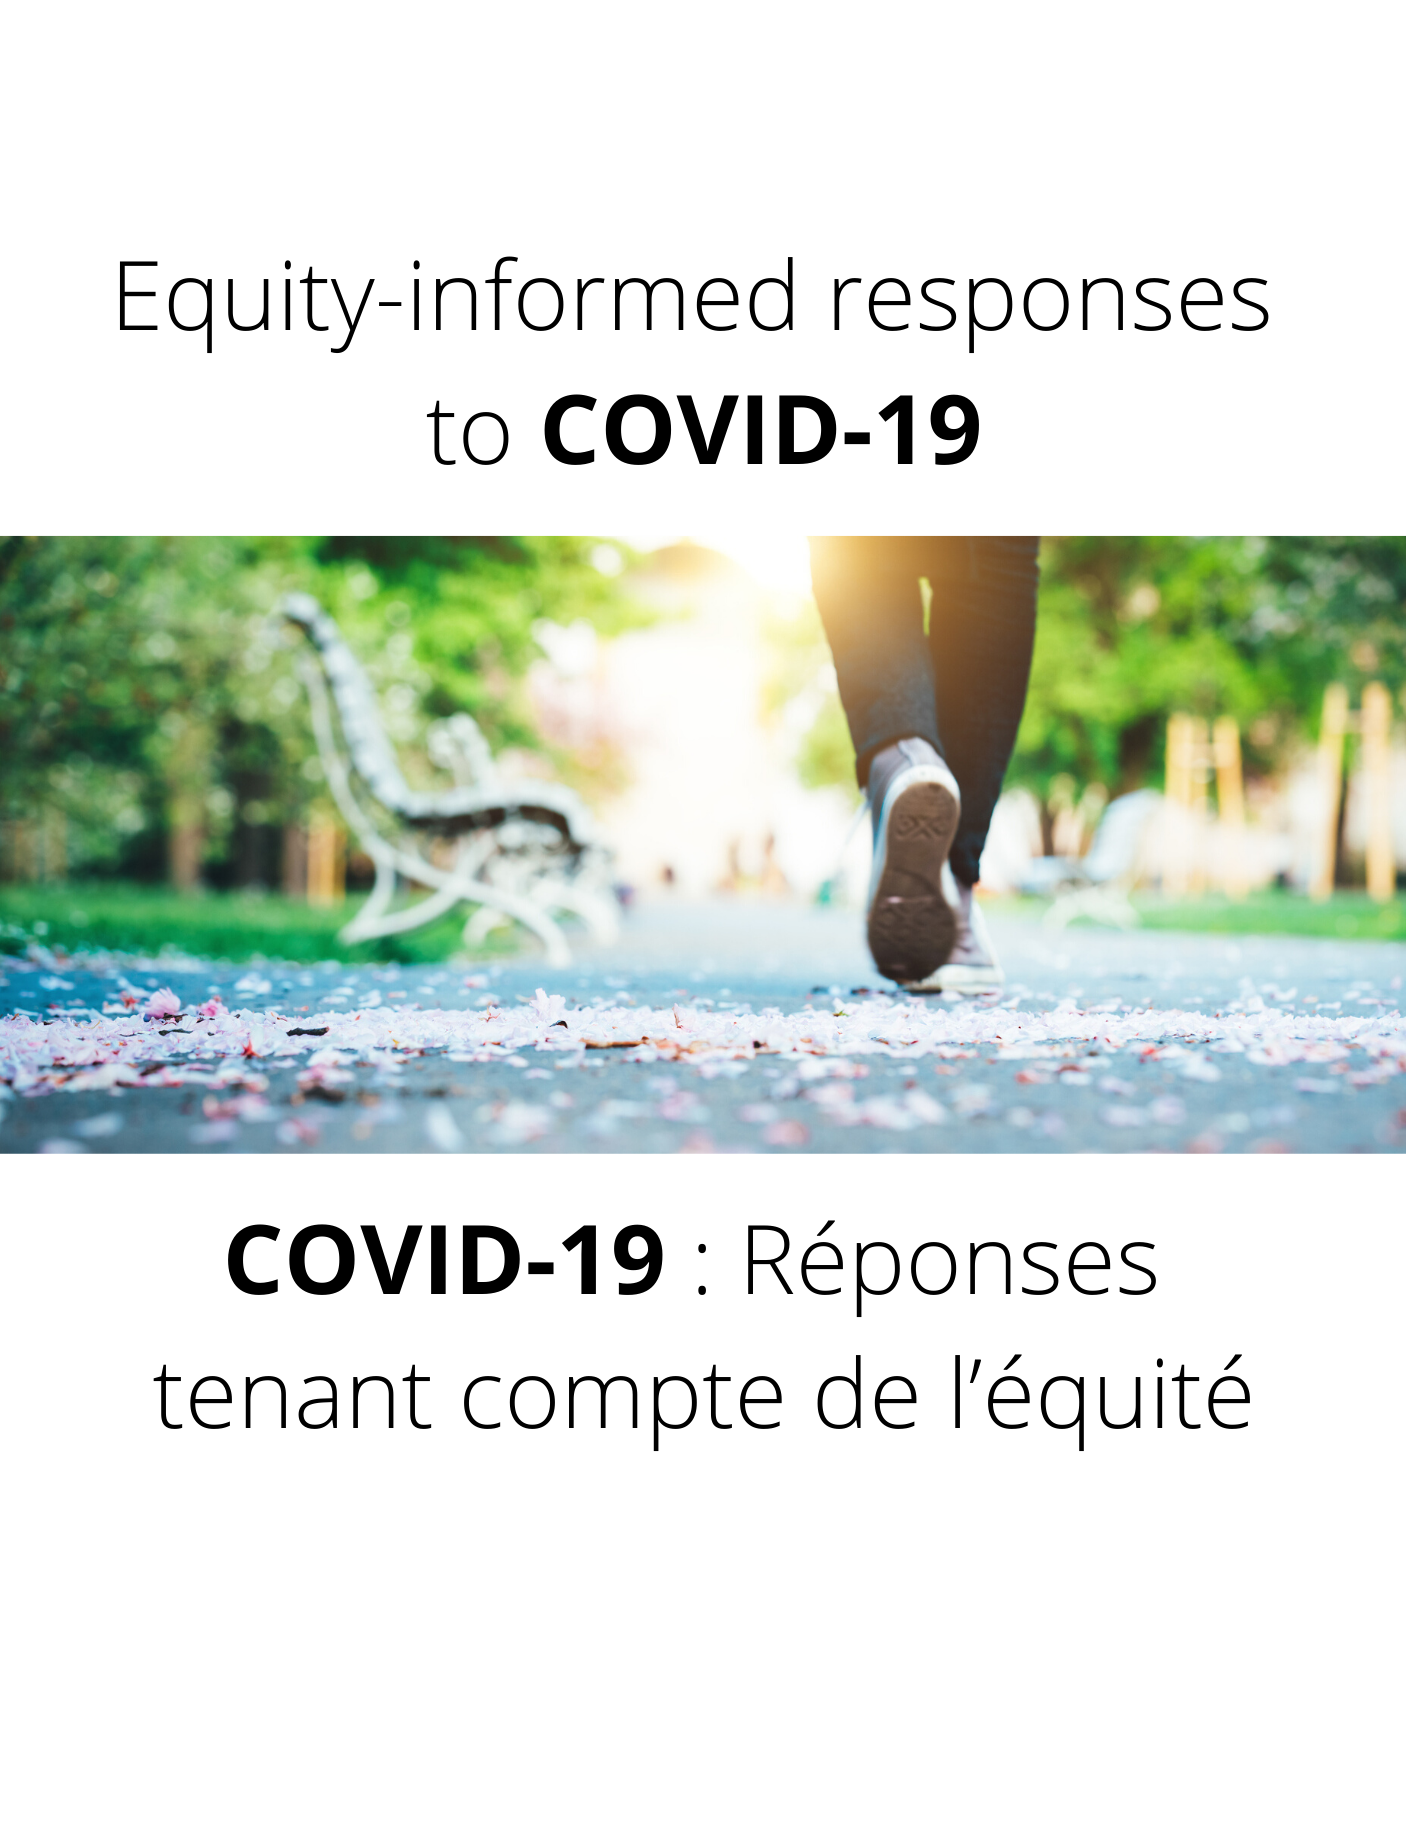 COVID-19 : La résilience des Autochtones, un levier à soutenir